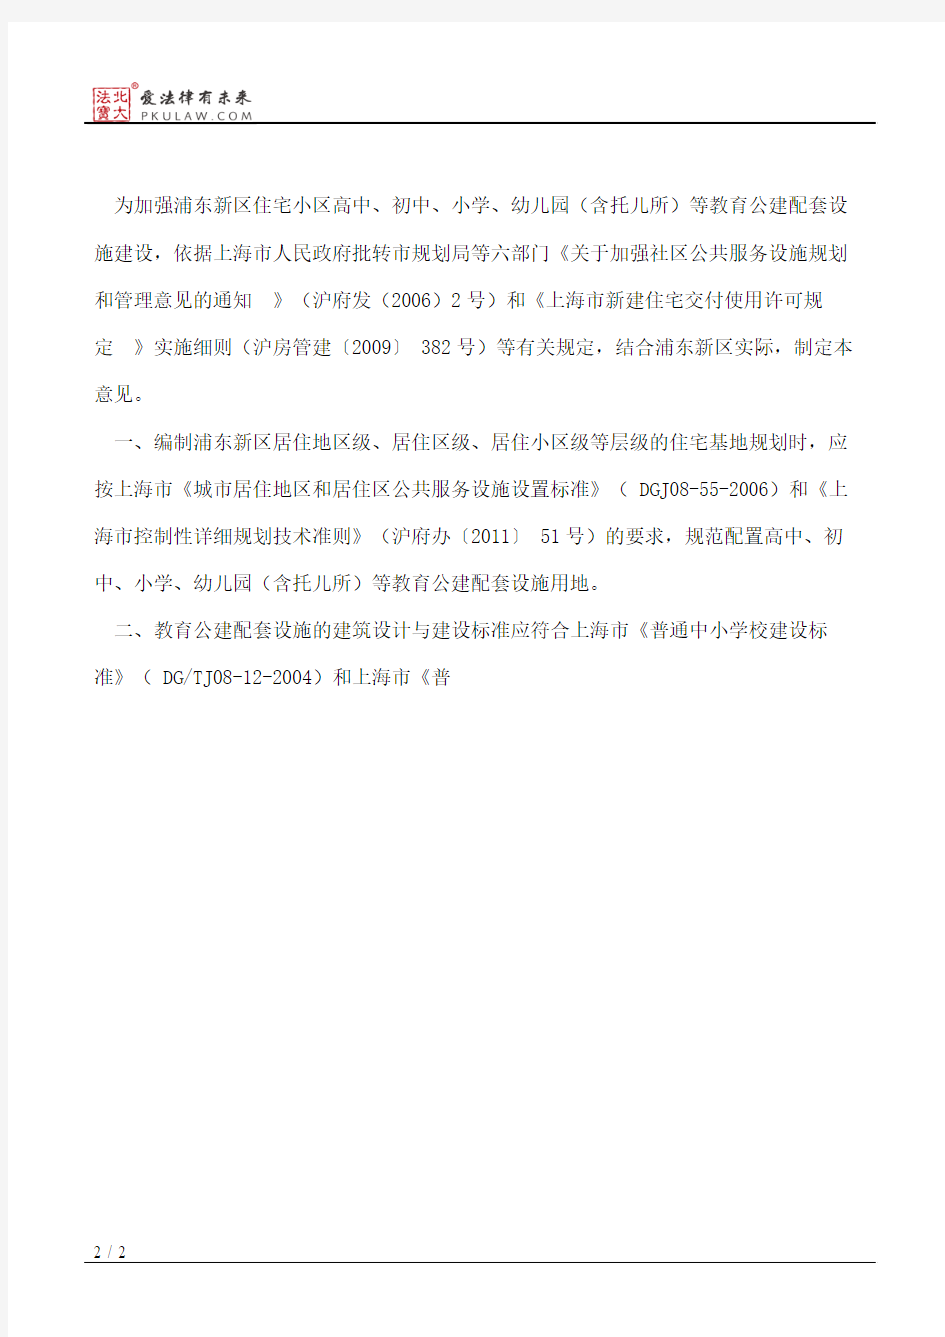 上海市浦东新区人民政府印发关于加强浦东新区教育公建配套建设的